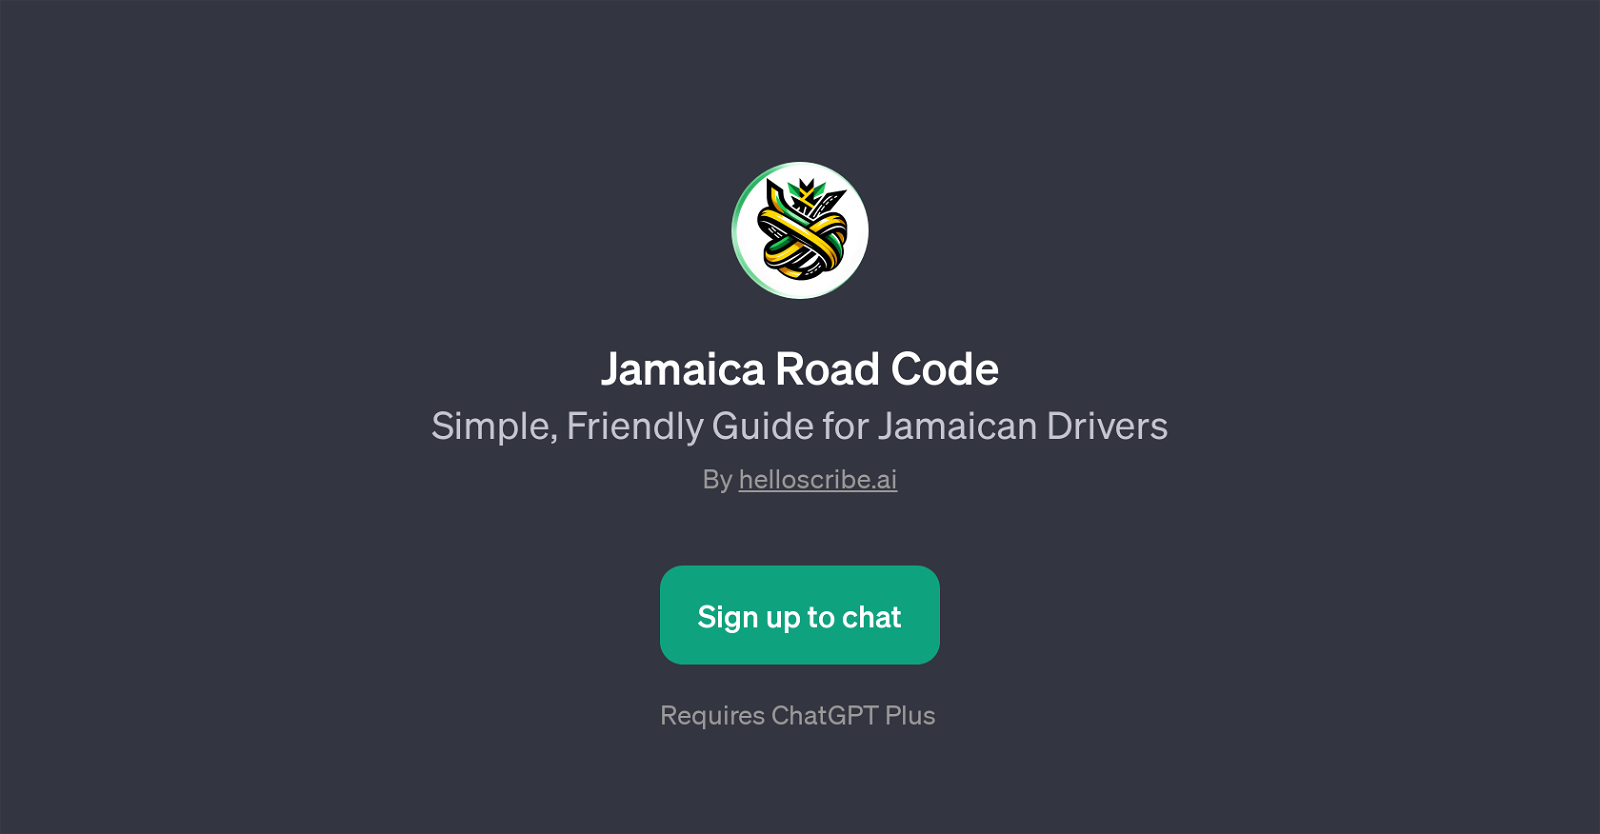 Jamaica Road Code website